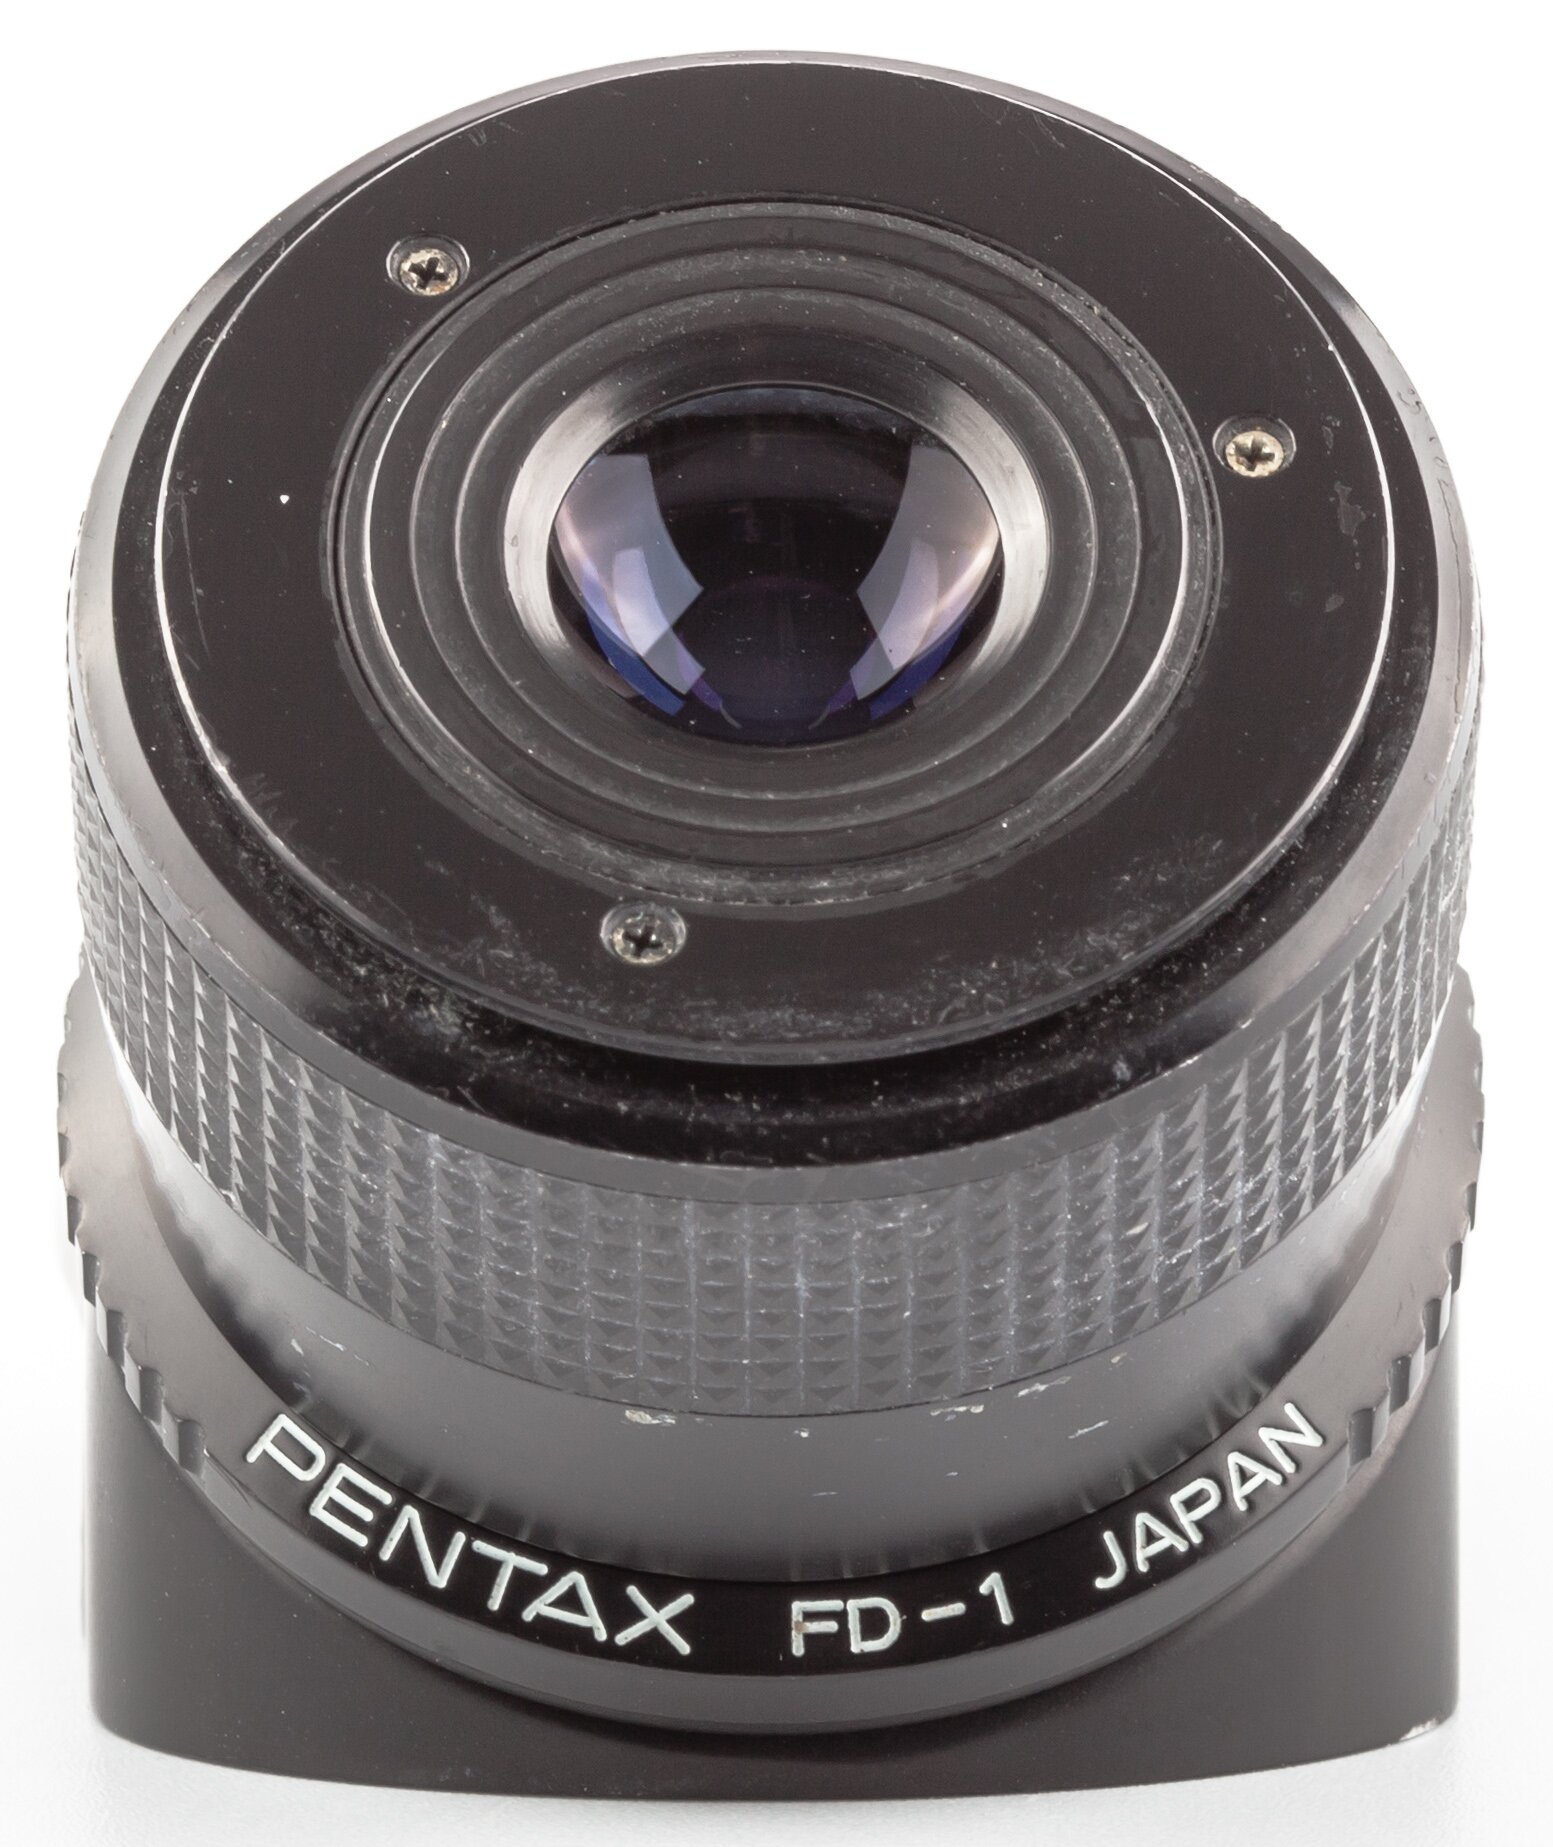 Pentax LX FB-1